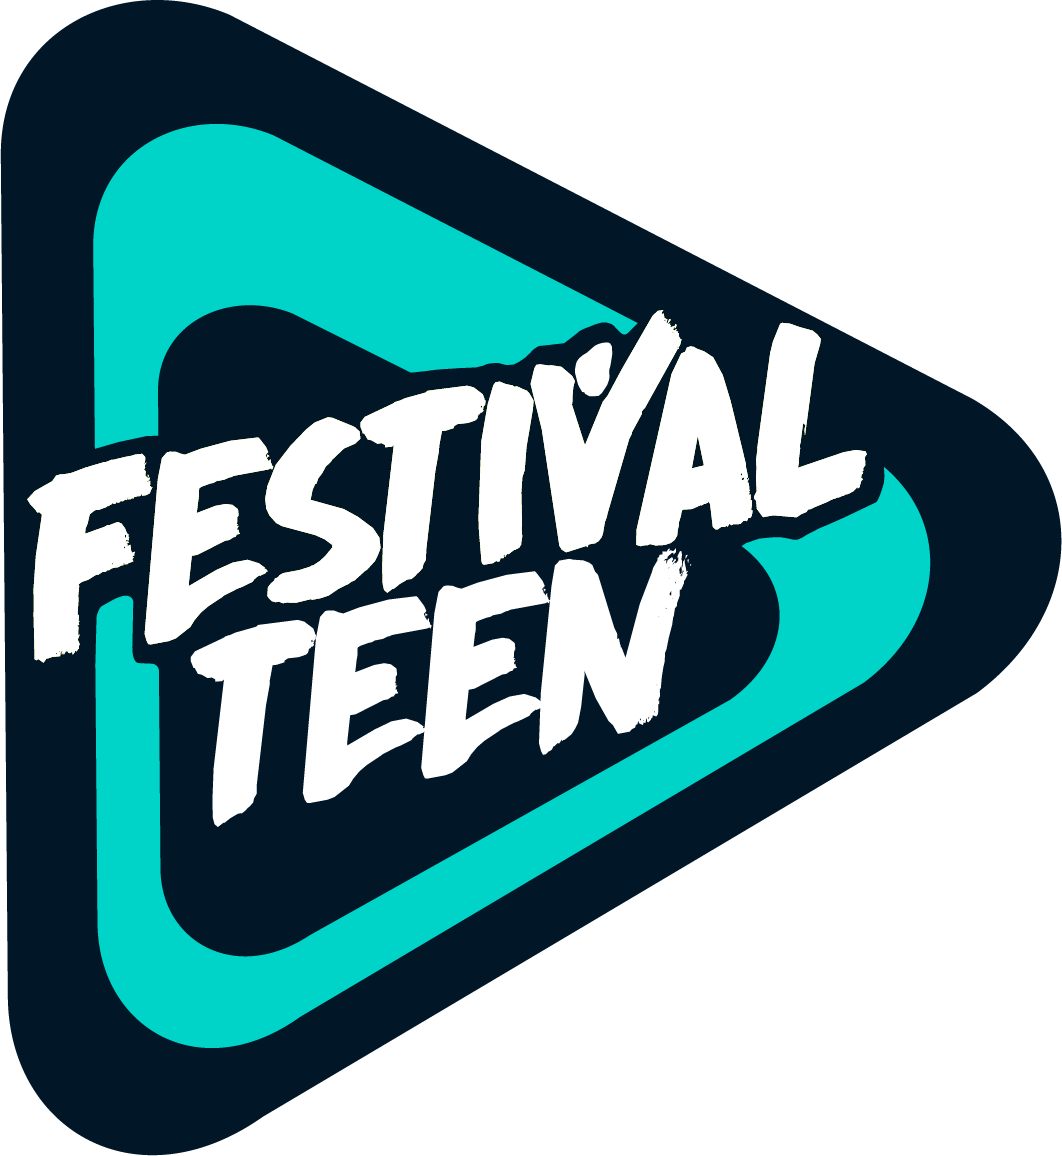 Festival Teen